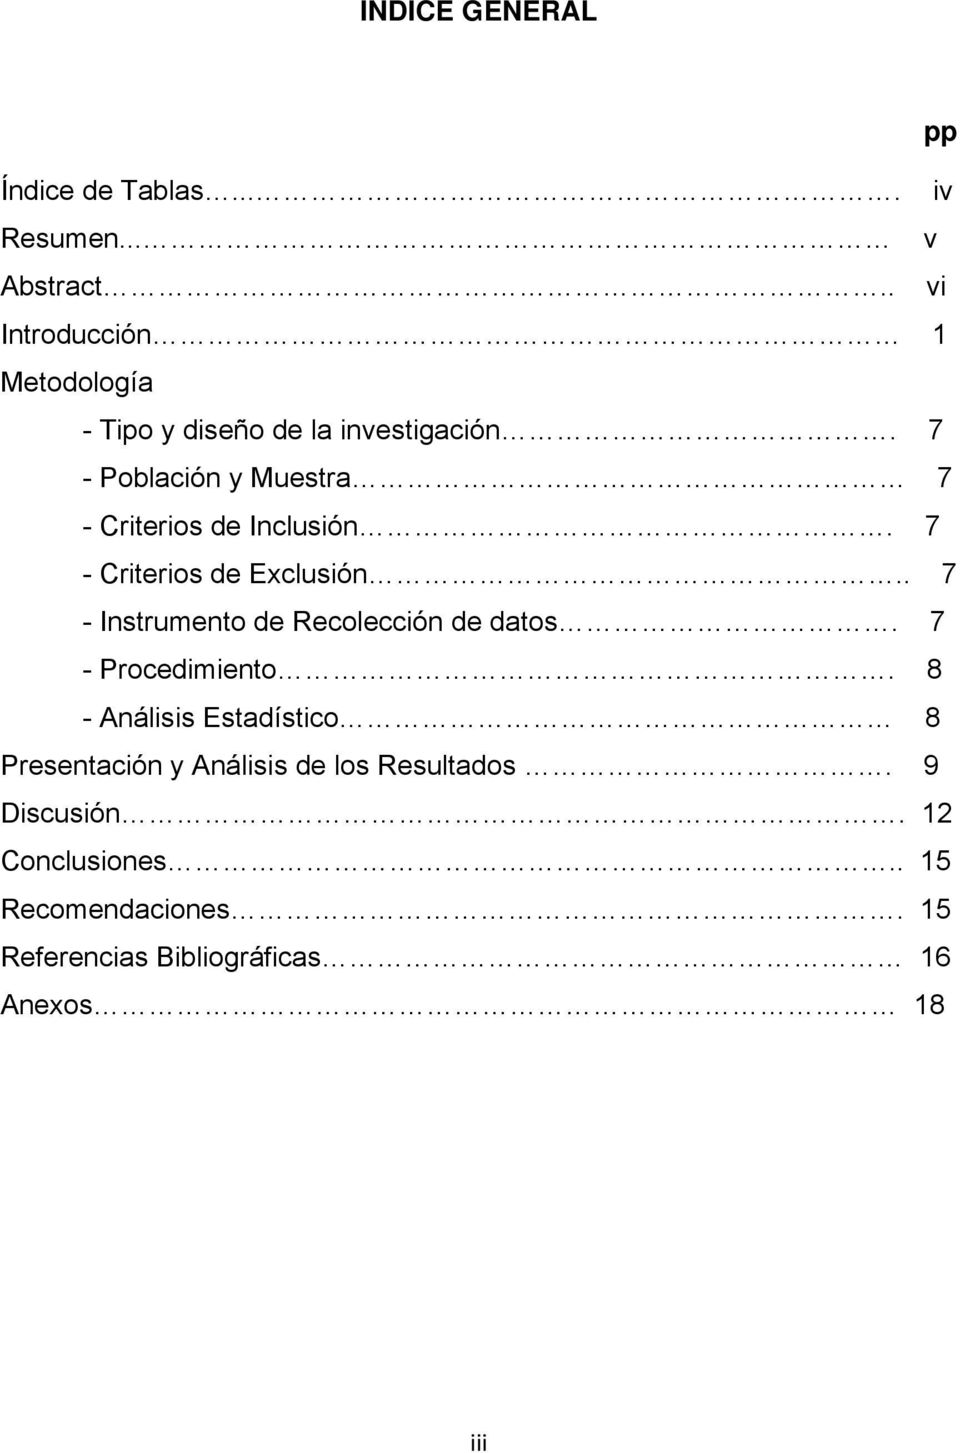 7 - Población y Muestra 7 - Criterios de Inclusión. 7 - Criterios de Exclusión.